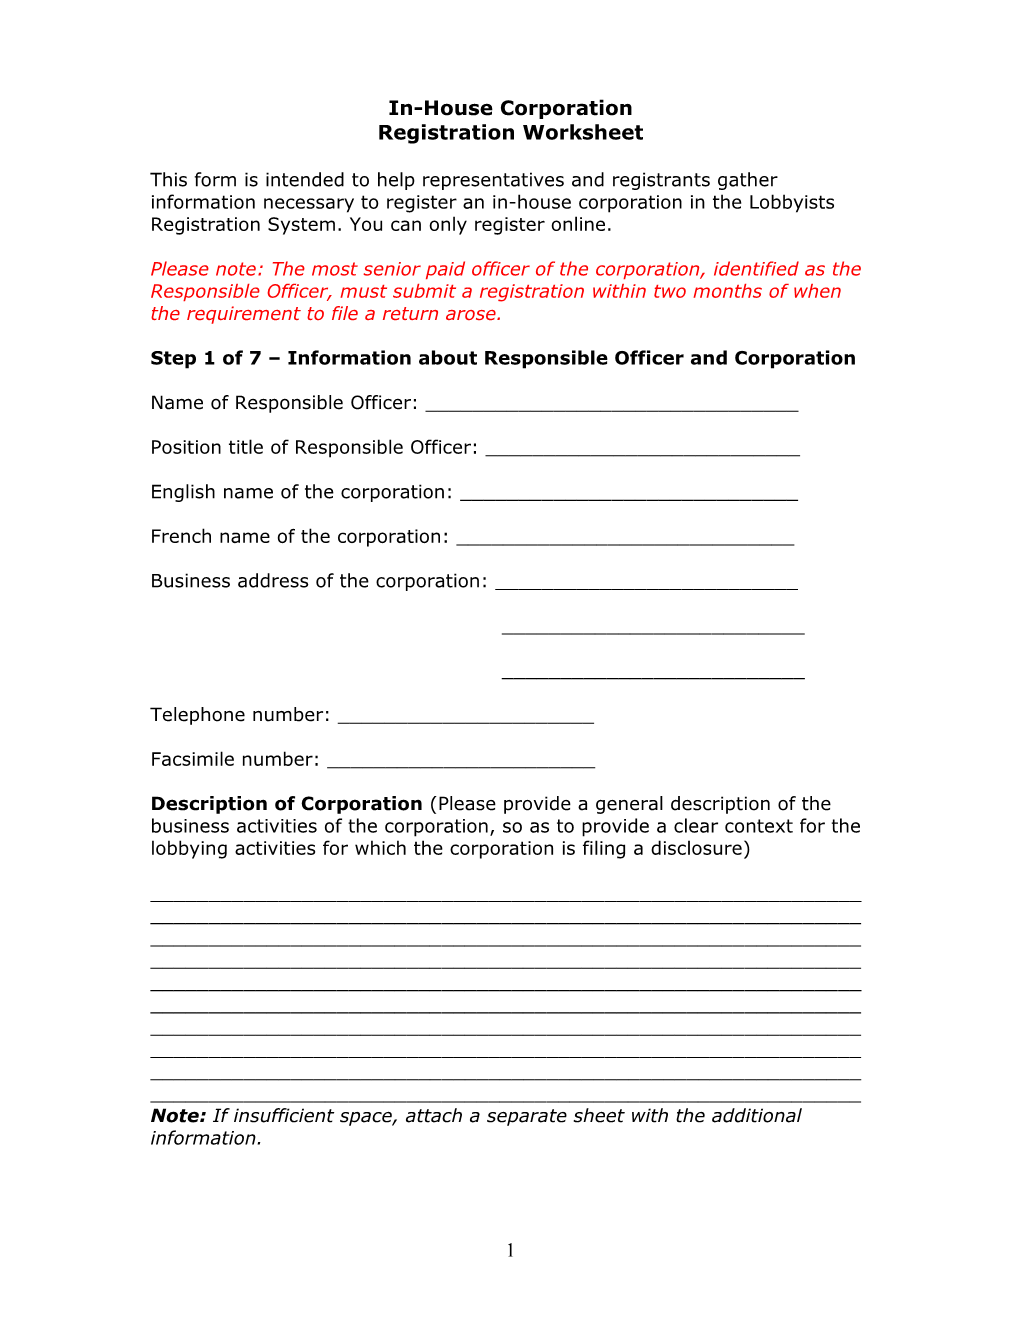 Registration Worksheet